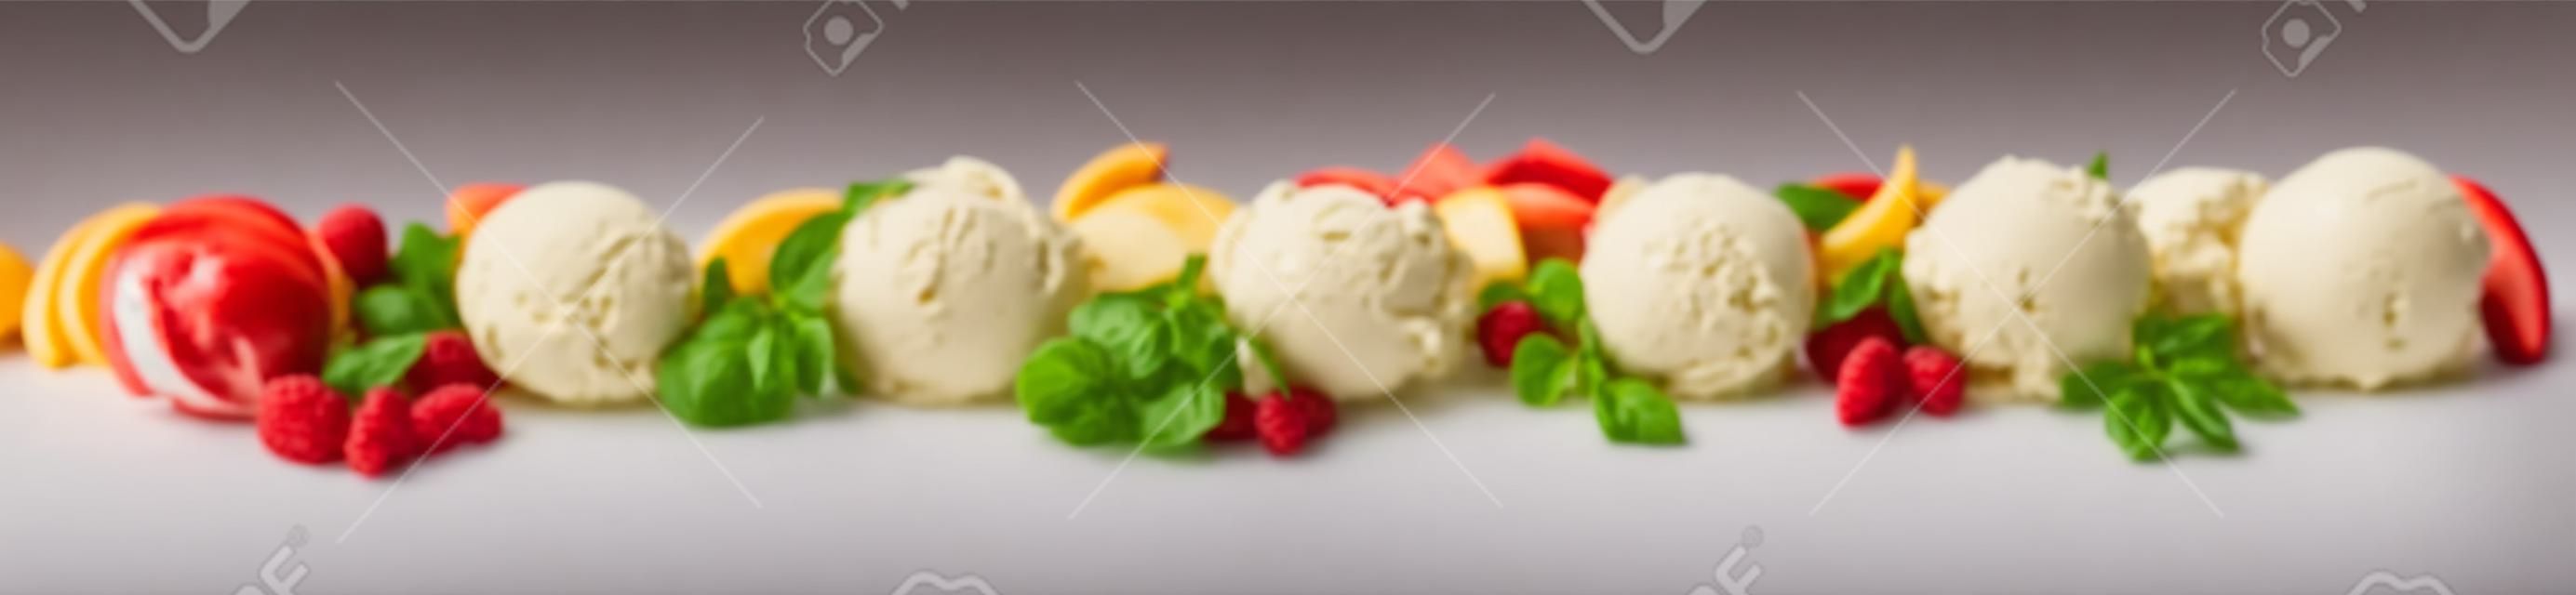 さまざまなフルーツフレーバー、バニラ、チョコレート、アーモンドを含むさまざまなイタリアンアイスクリームデザートが白地に新鮮な食材を使ったスクープのラインとして表示された広いパノラマバナー